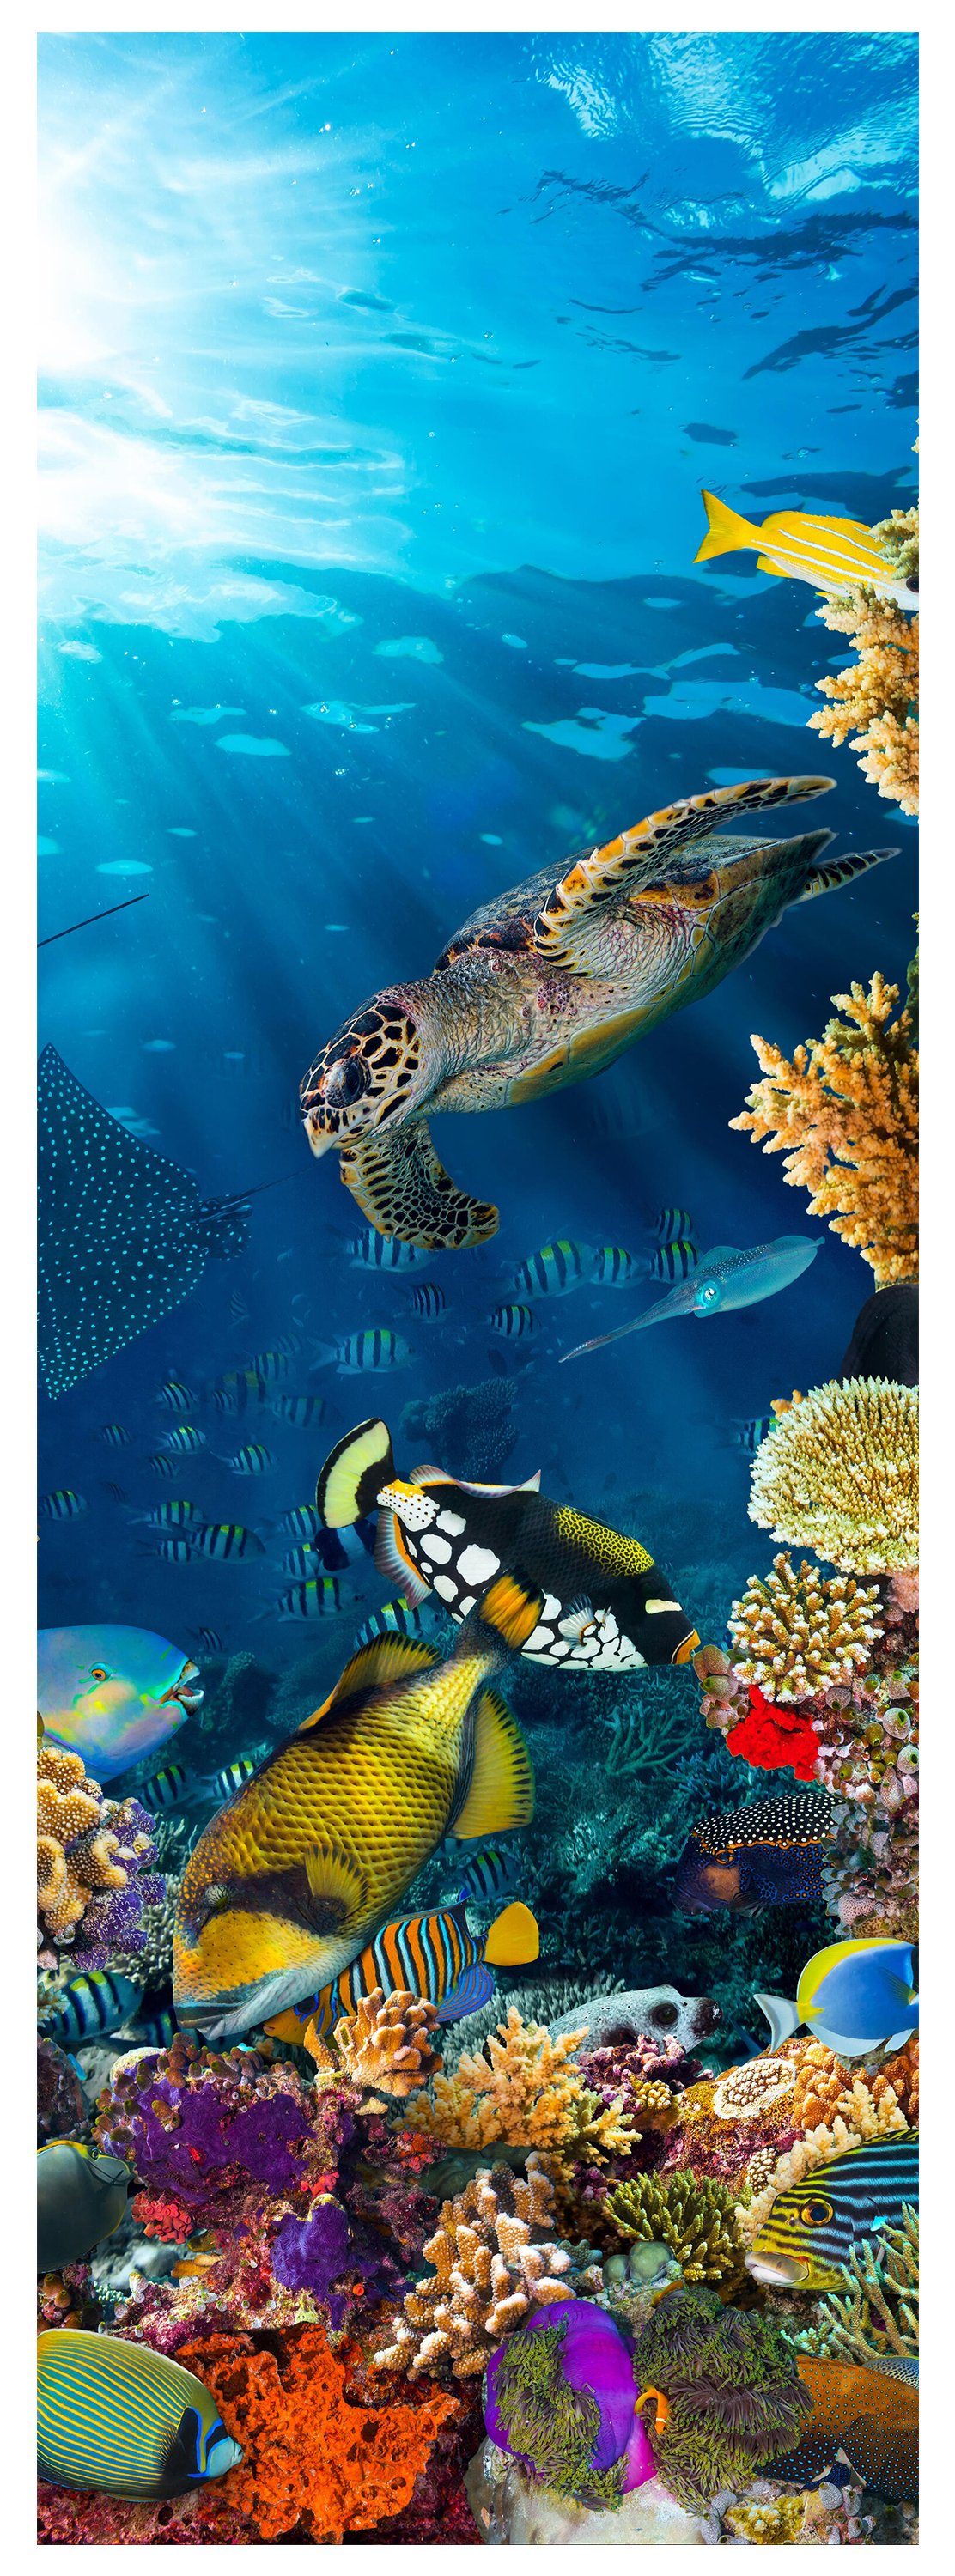 wandmotiv24 Türtapete Unterwasser Meer Korallen Fische, glatt, Fototapete, Wandtapete, Motivtapete, matt, selbstklebende Dekorfolie